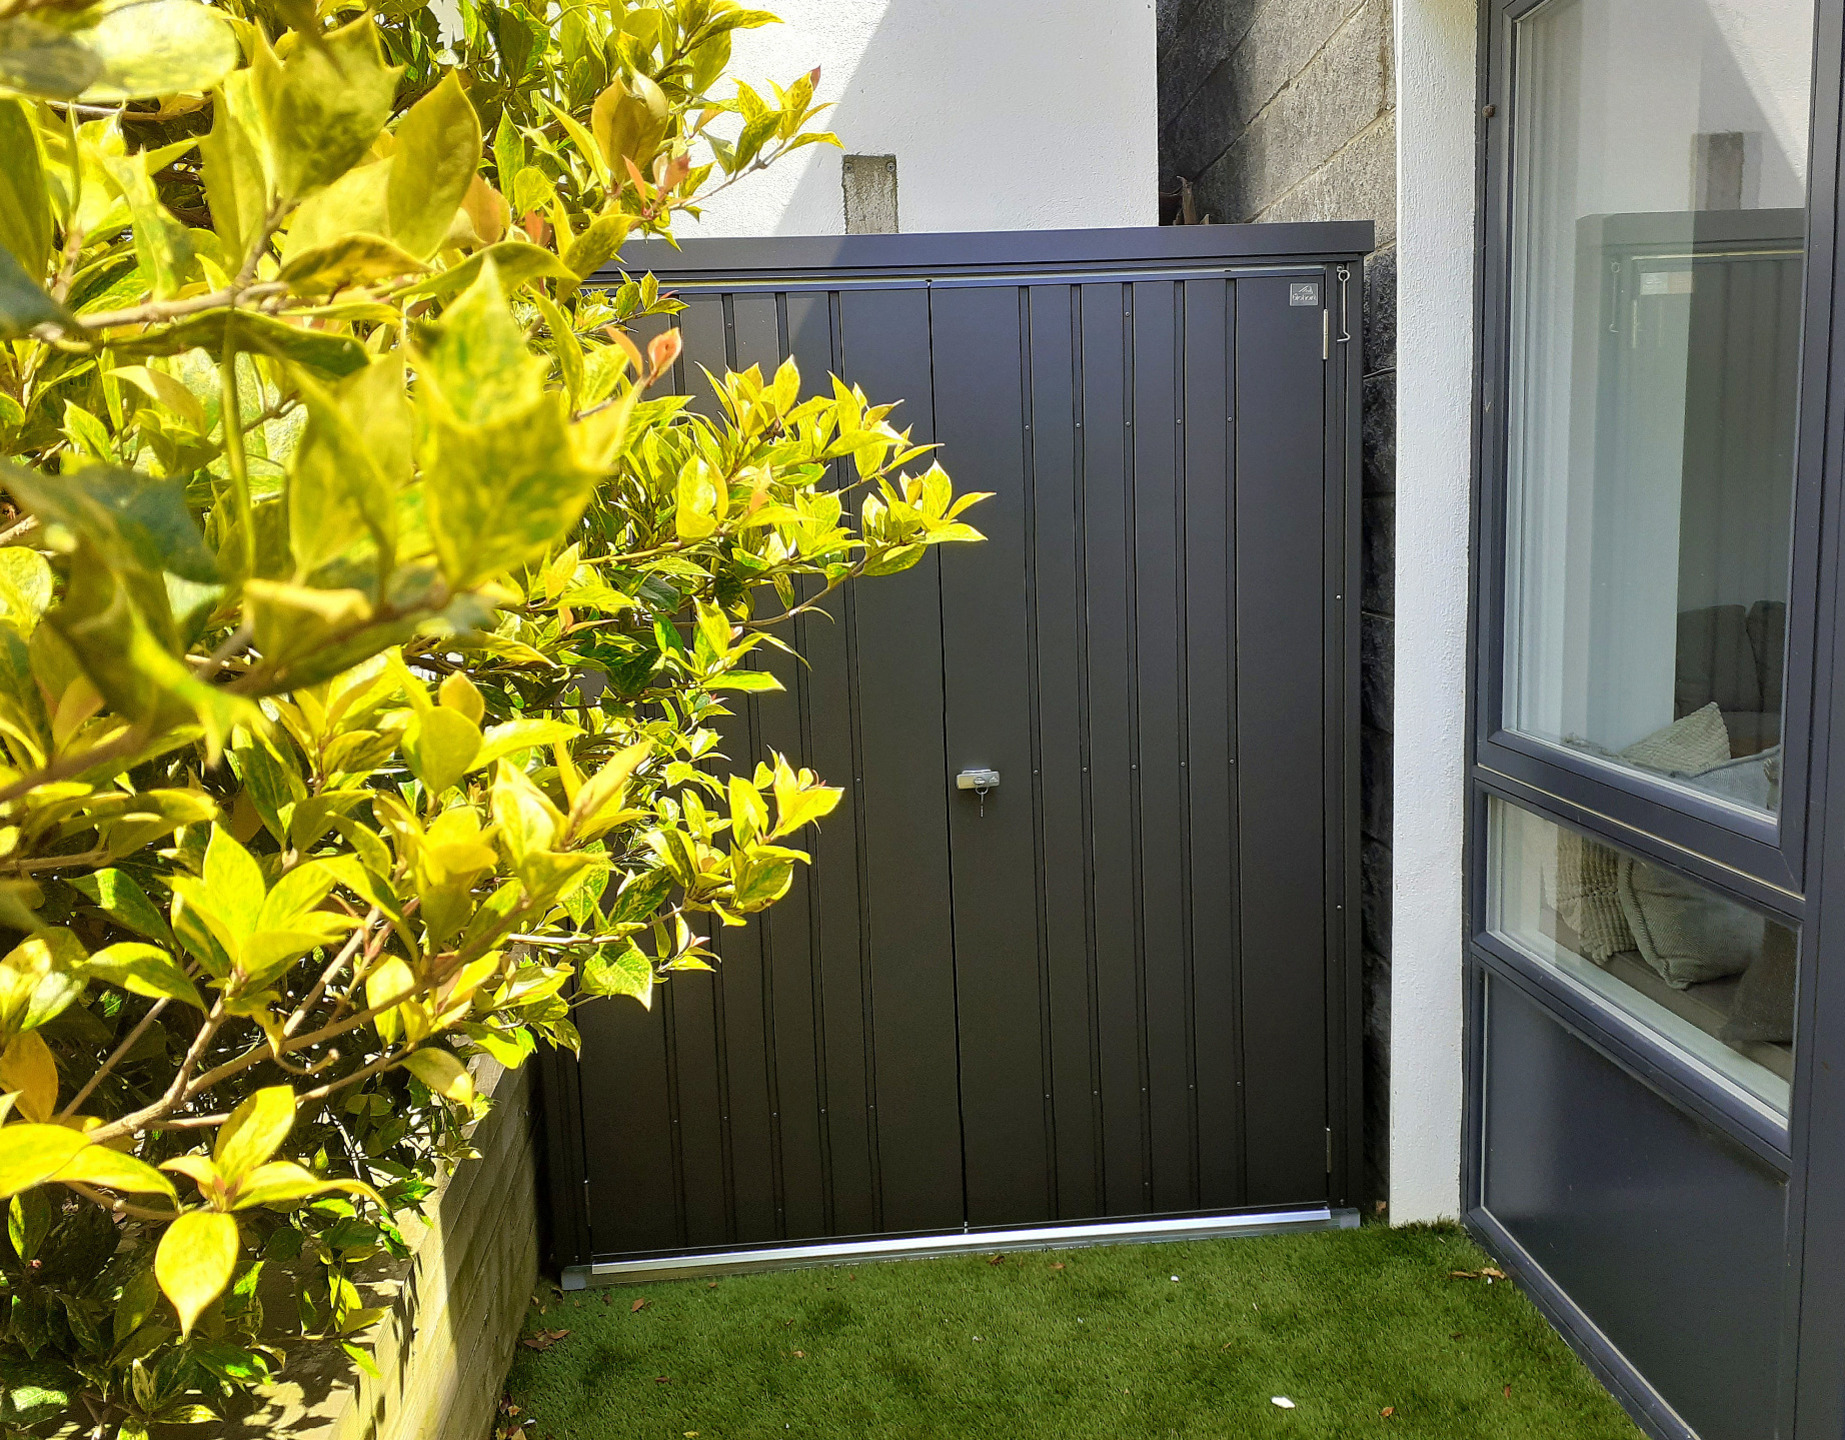 A versatile & space efficient garden storage unit | Biohort Equipment Locker Size 150 in metallic dark grey | Supplied + Fitted in Dun Laoghaire | Unbeatable Prices & FREE Installations in Dublin | Tel Owen Chubb 087-2306128